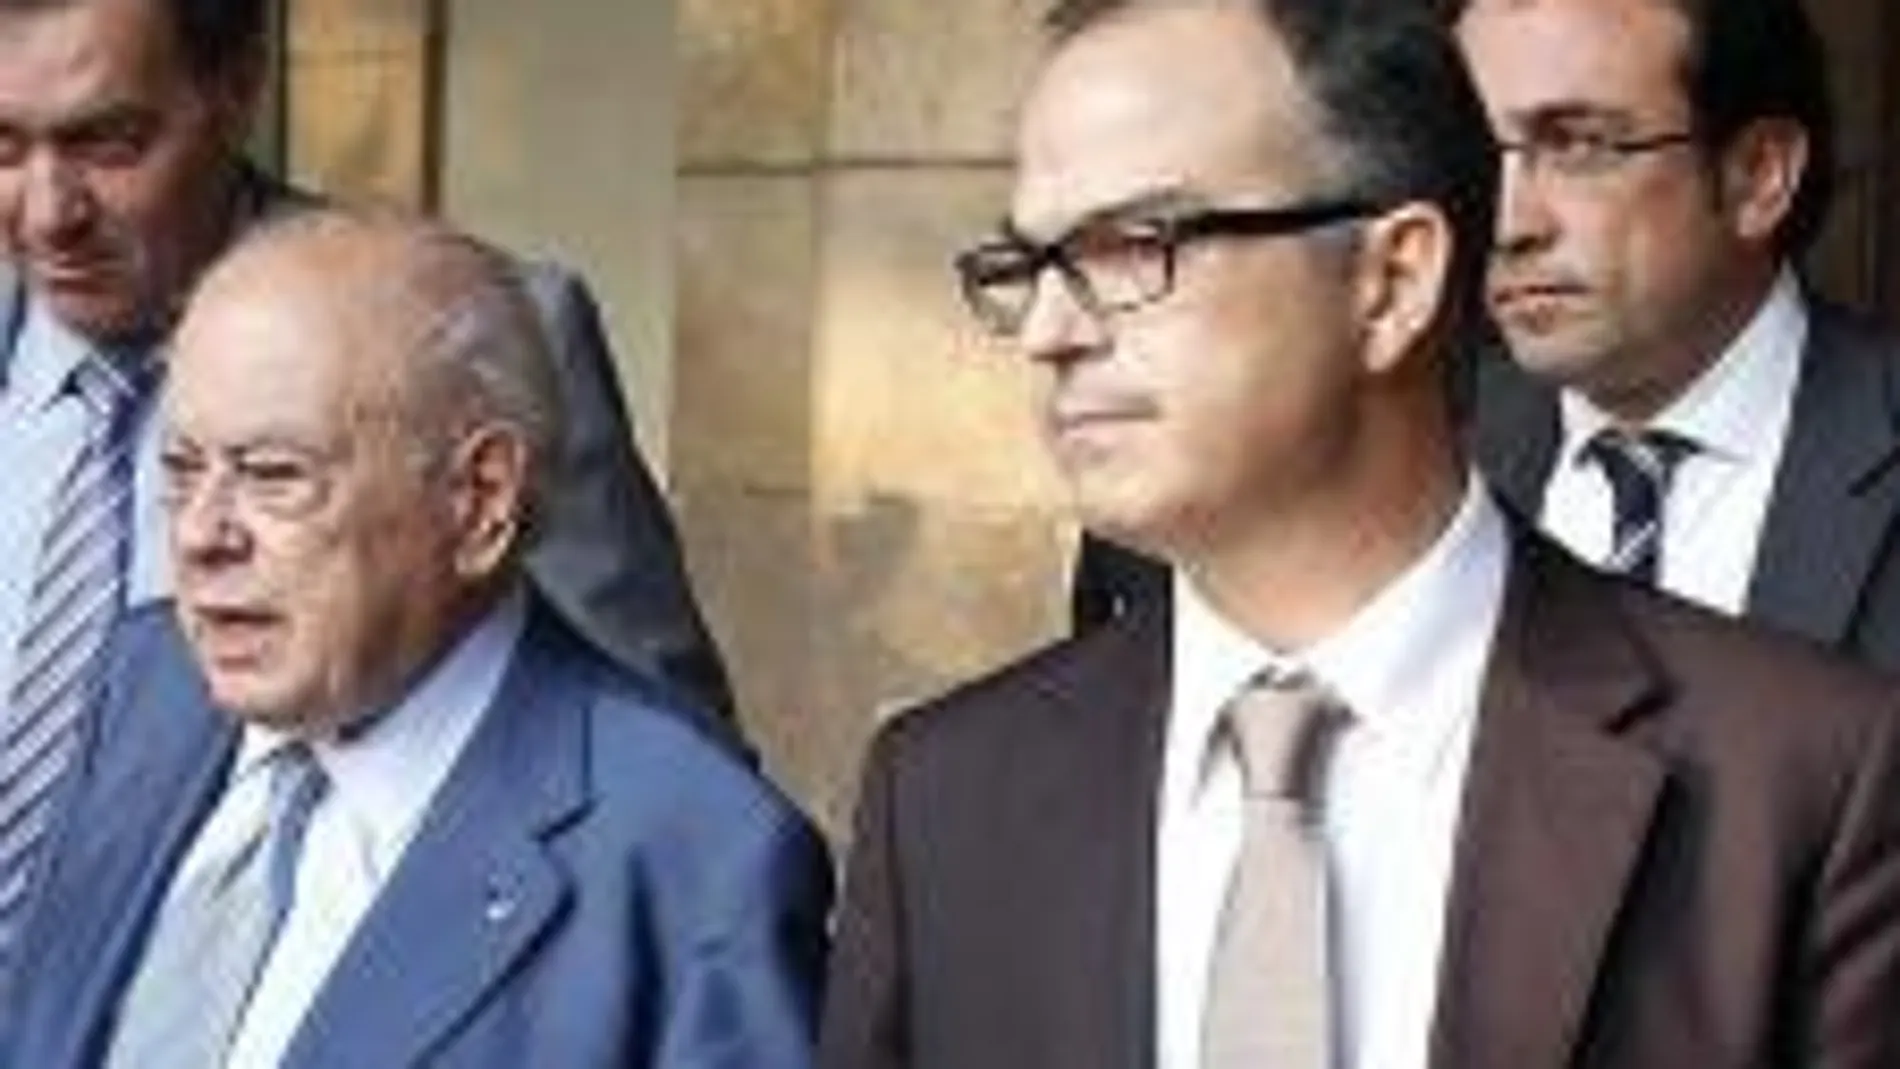 Jordi Pujol, acompañado de los lideres de CDC Jordi Turull y Josep Rull, entre otros, abandona el Parlament tras su comparecencia.